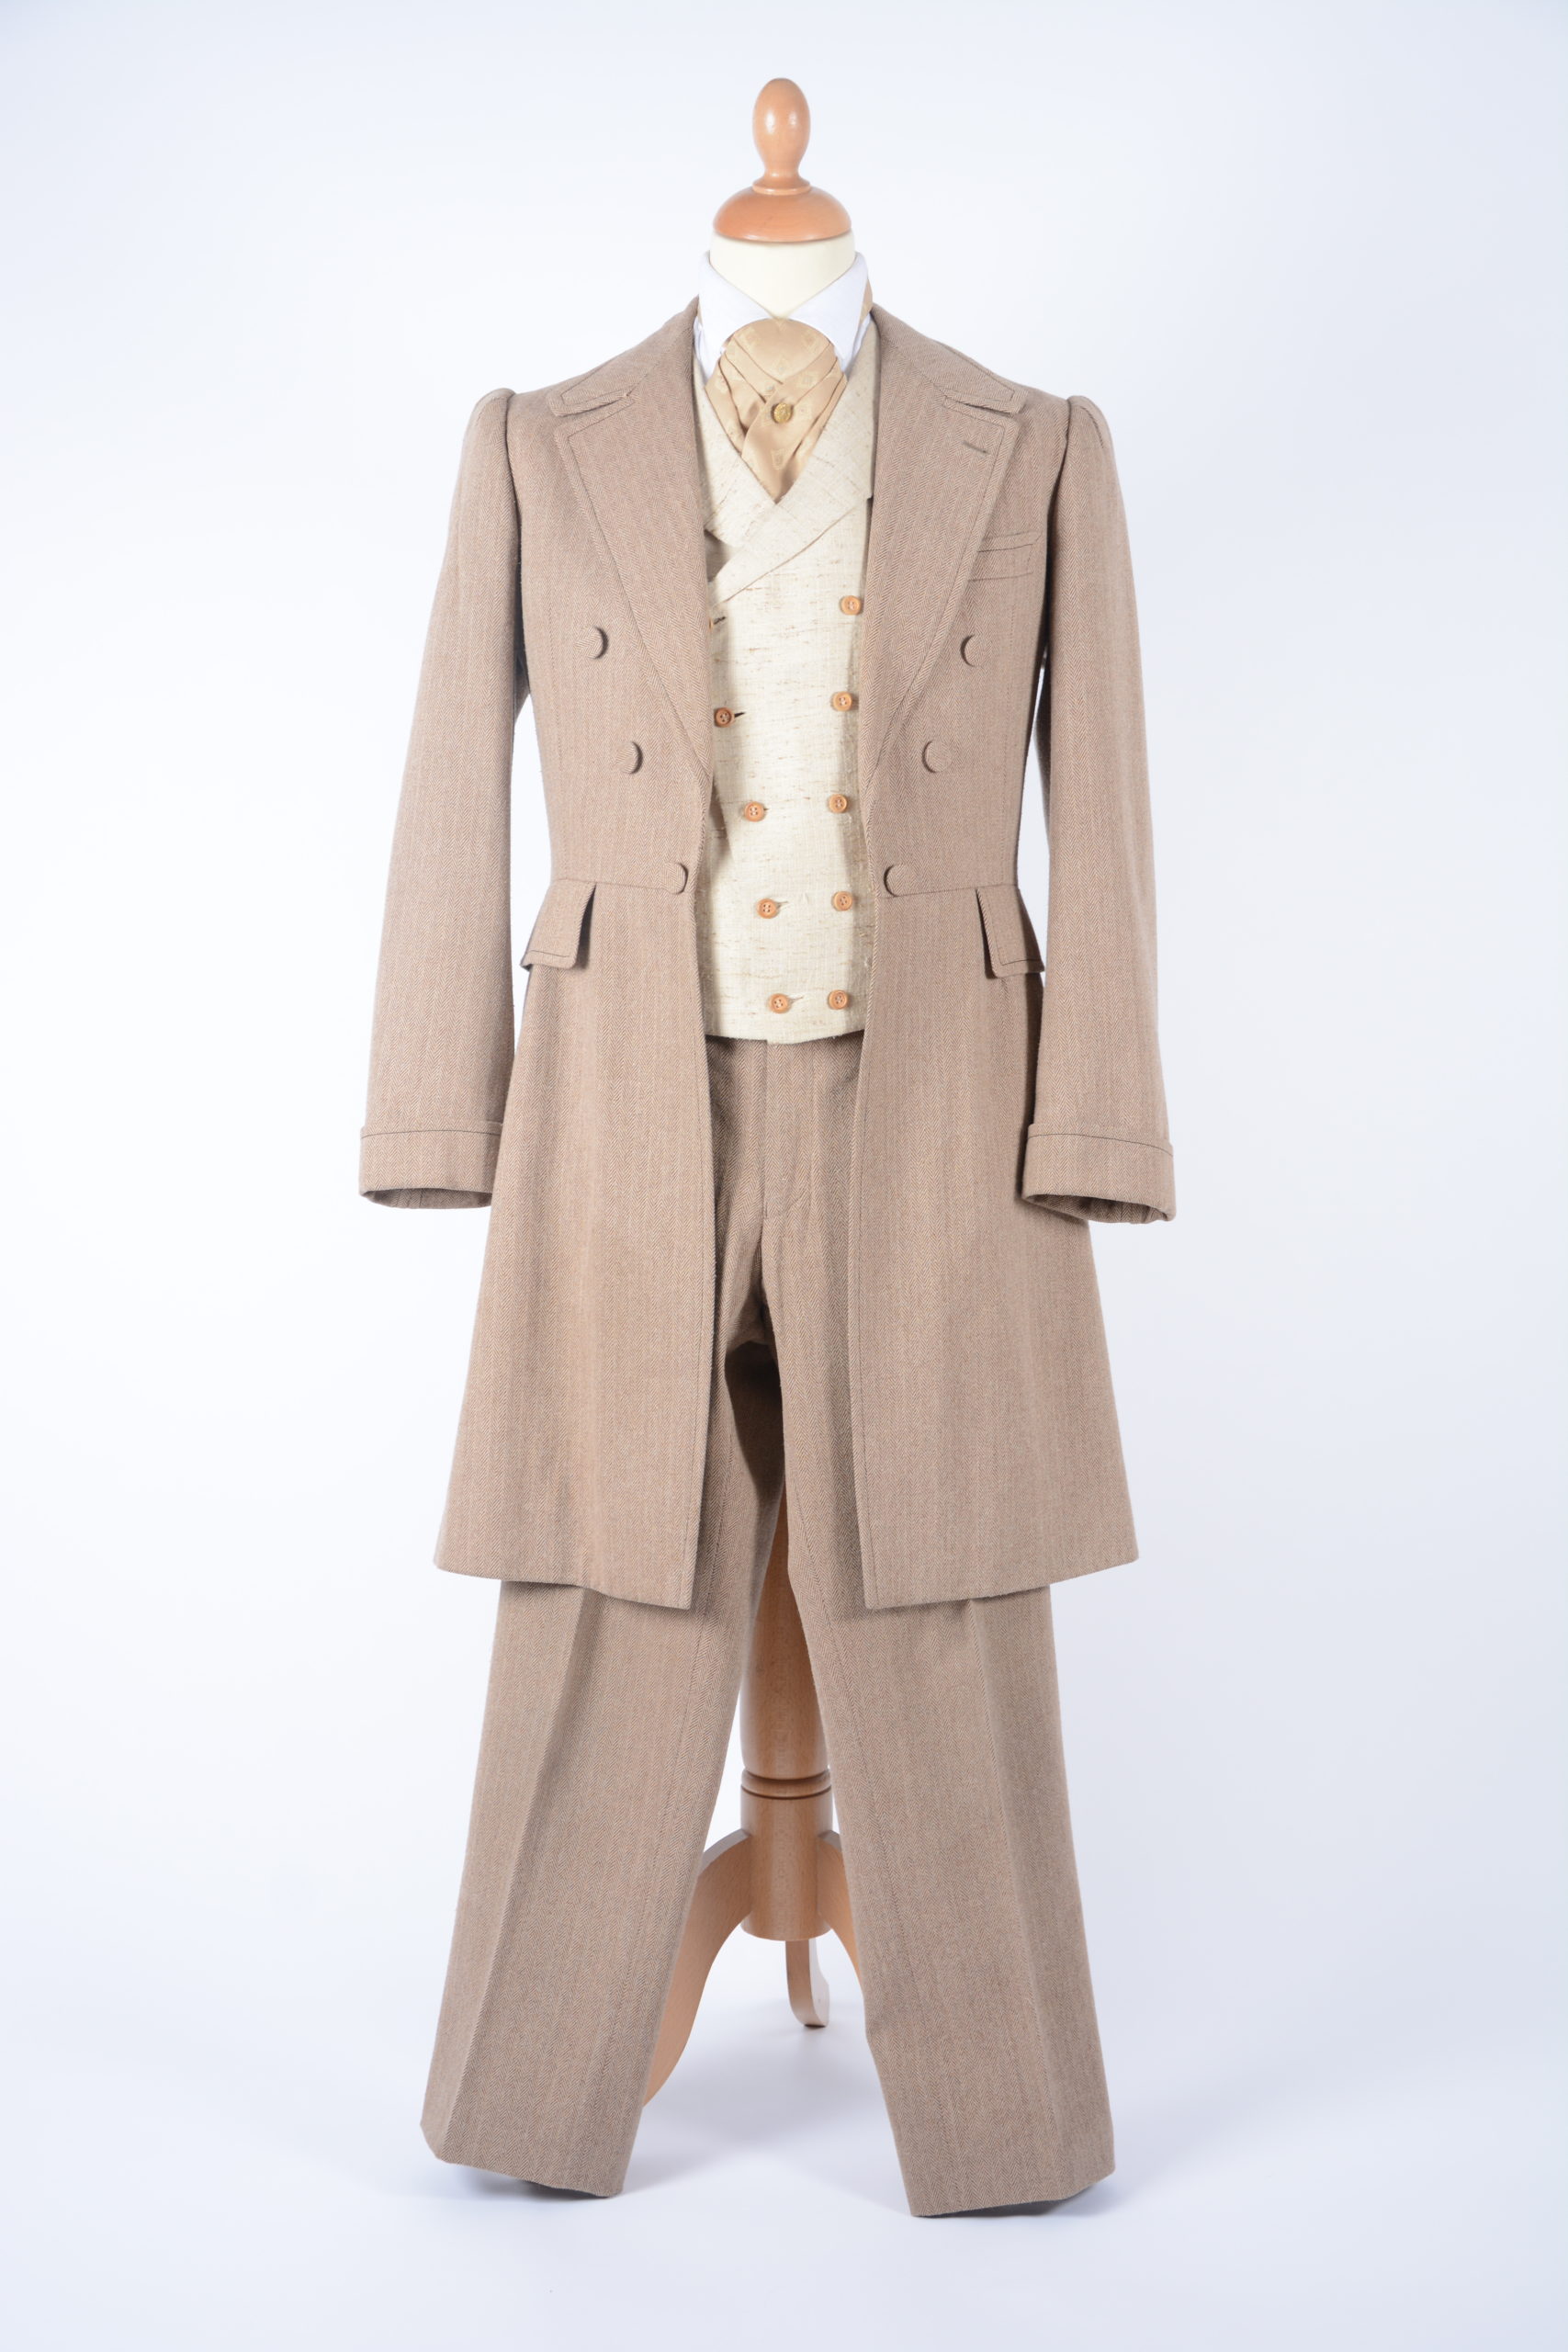 Rodingote homme 1890 Vêtement, manteau ajusté à la taille et à longues basques, porté aussi bien par les hommes que par les femmes.